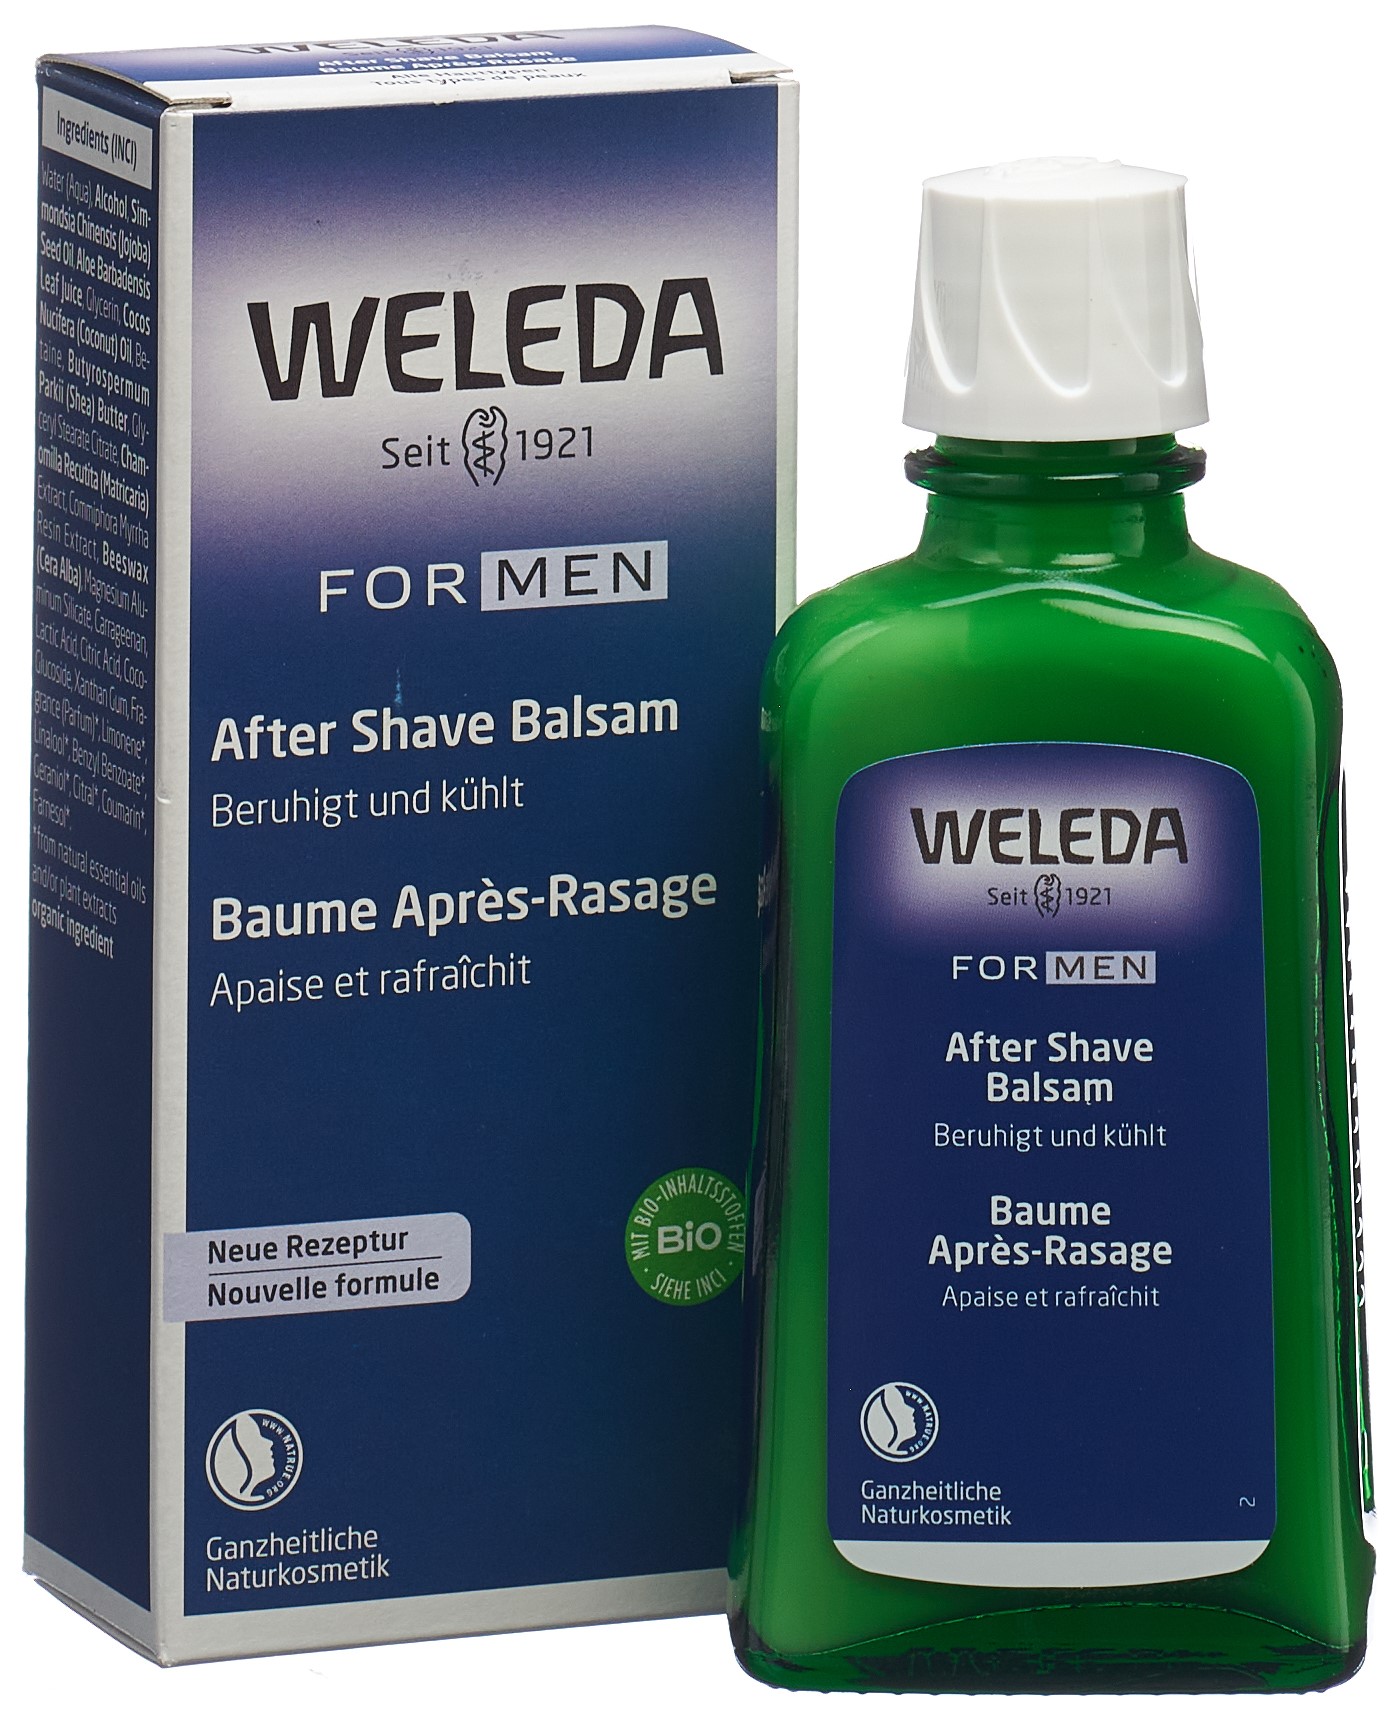 WELEDA FOR MEN After Shave Balsam 100 ml